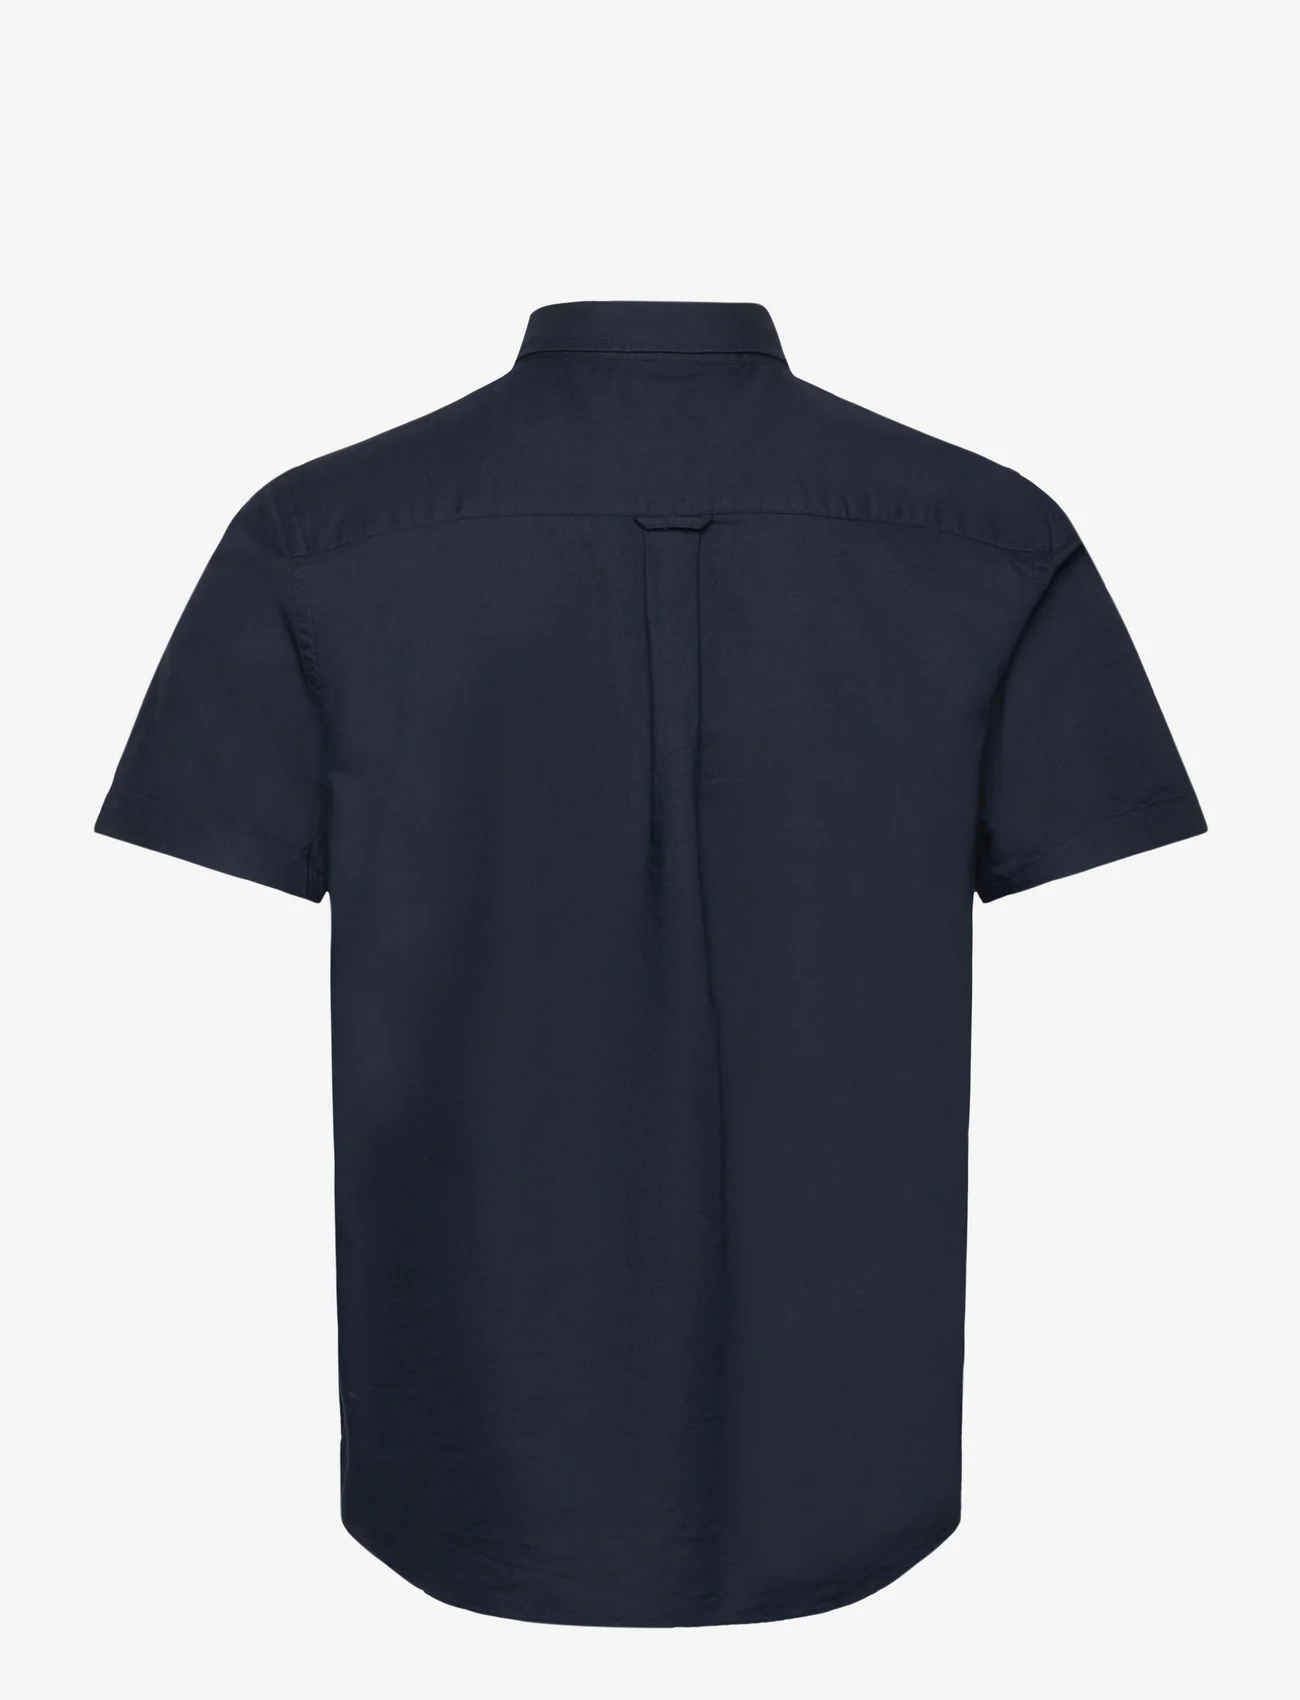 Lyle & Scott - Short Sleeve Oxford Shirt - oxford skjorter - z271 dark navy - 1